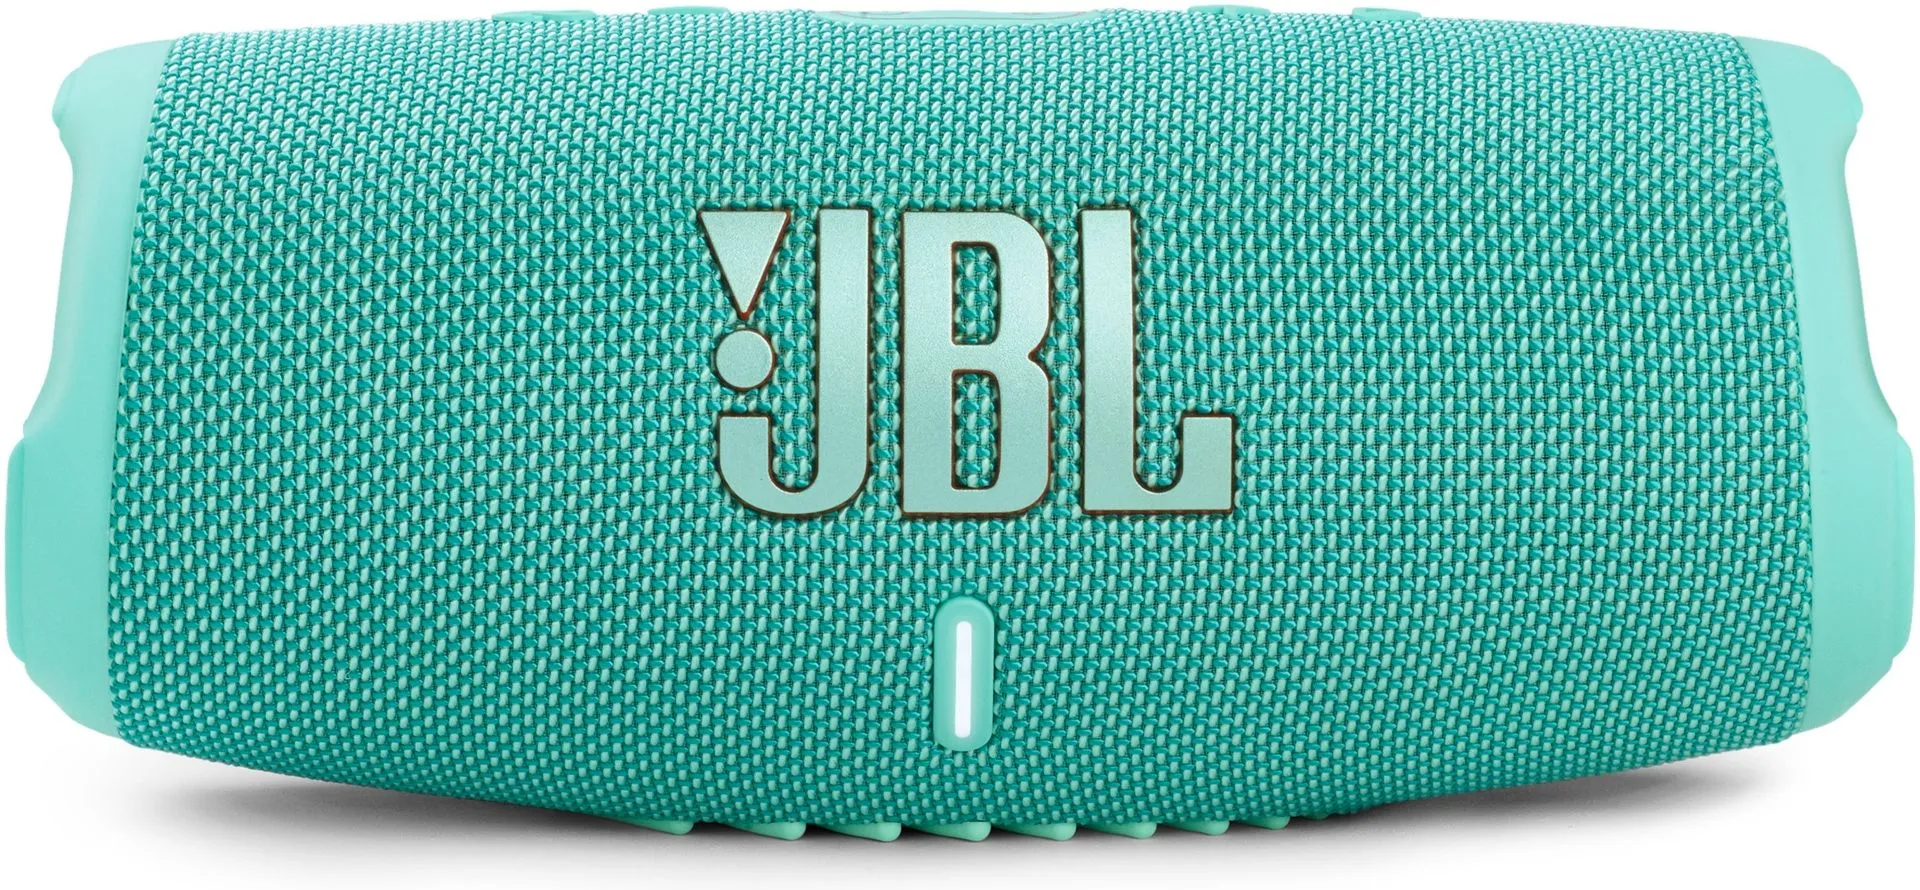 JBL Bluetooth-kaiutin Charge 5 turkoosi